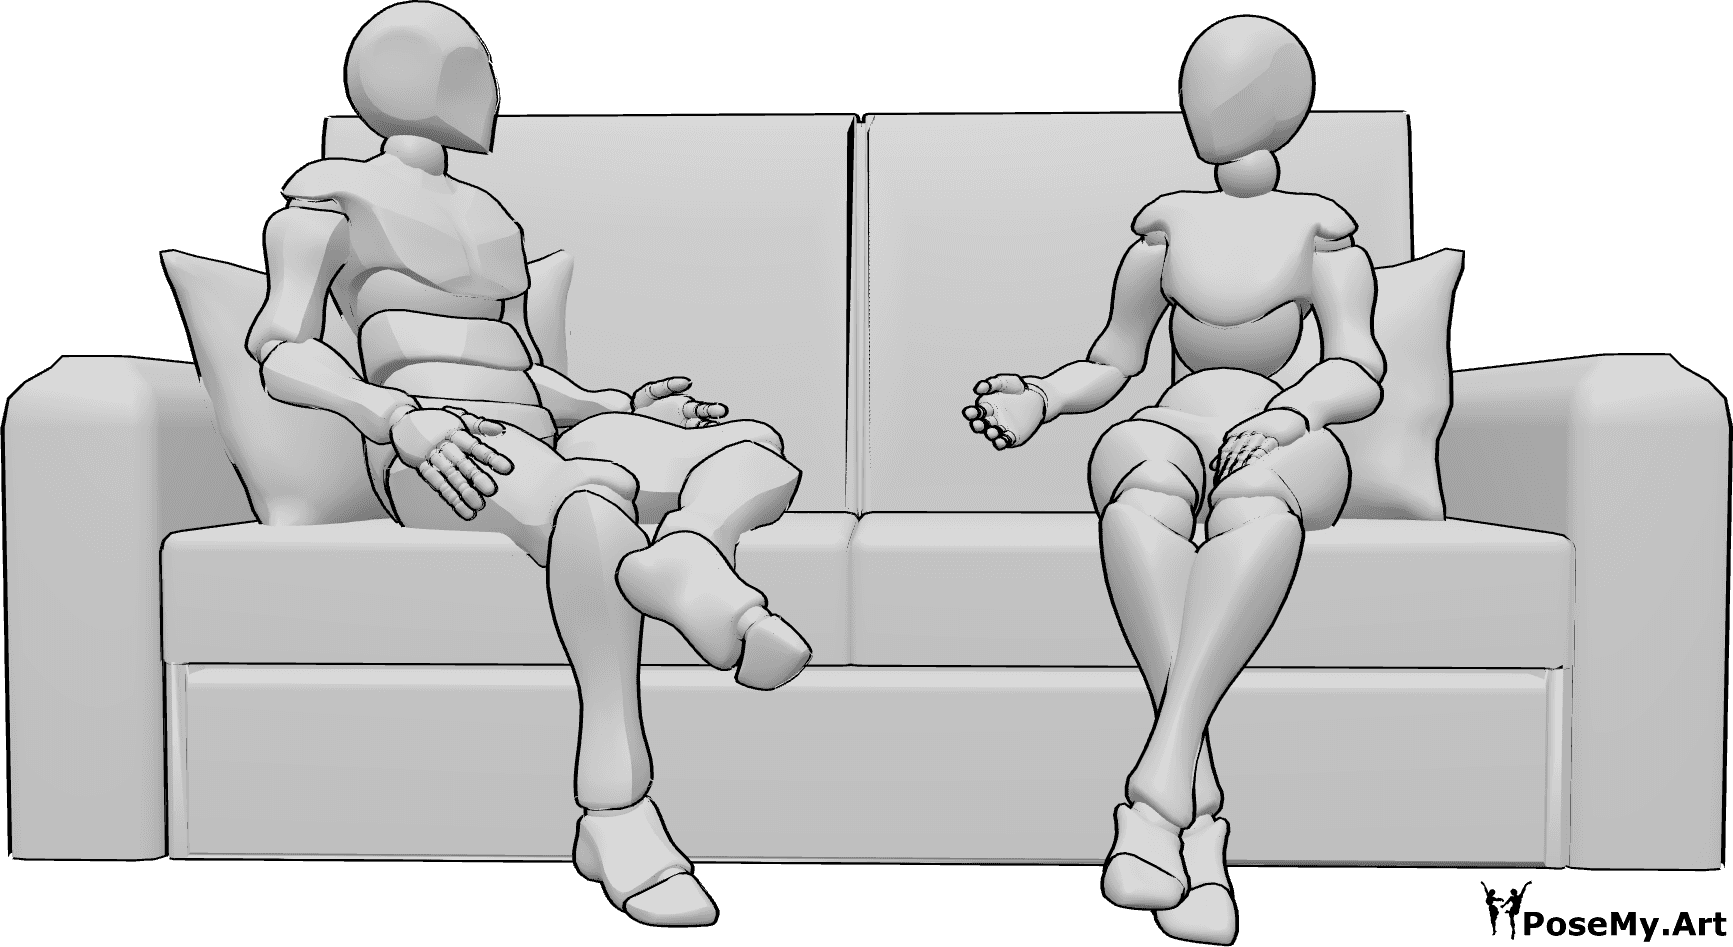 Référence des poses- Femme homme en train de parler - Une femme et un homme sont assis sur le canapé, se regardent et parlent.